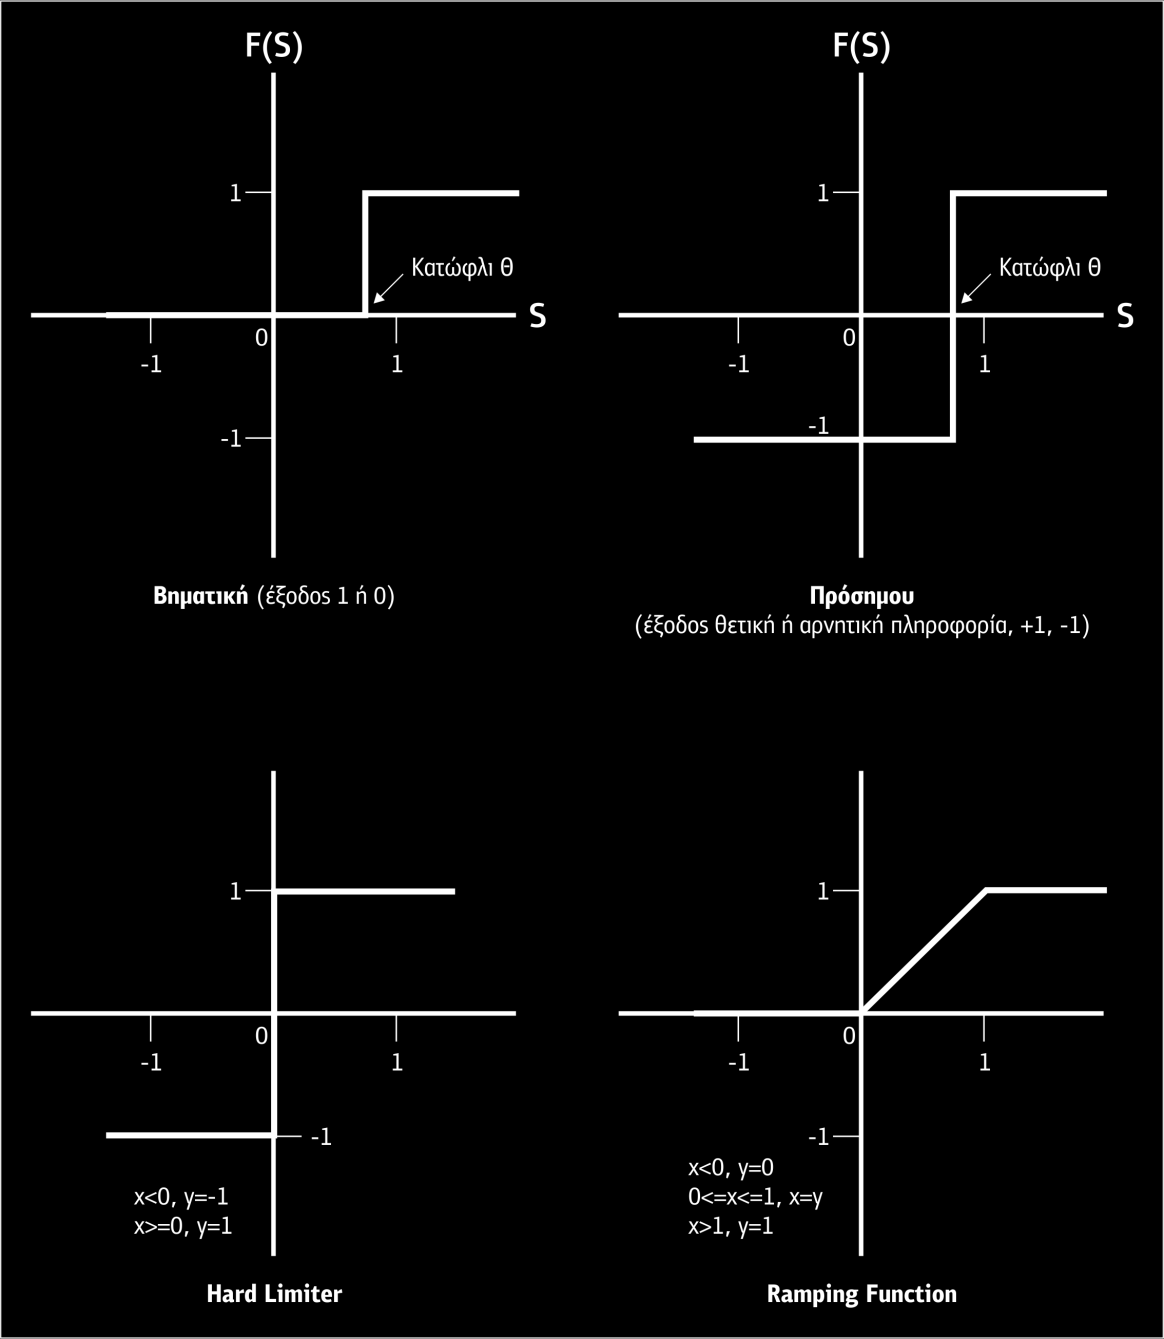 Σχήμα 4.22 Γραμμικές συναρτήσεις μετάβασης Ένα γνωστό ΤΝΔ που χρησιμοποιεί τη δυαδική γραμμική συνάρτηση είναι ο Perceptron (βλέπε Σχήμα 4.18).